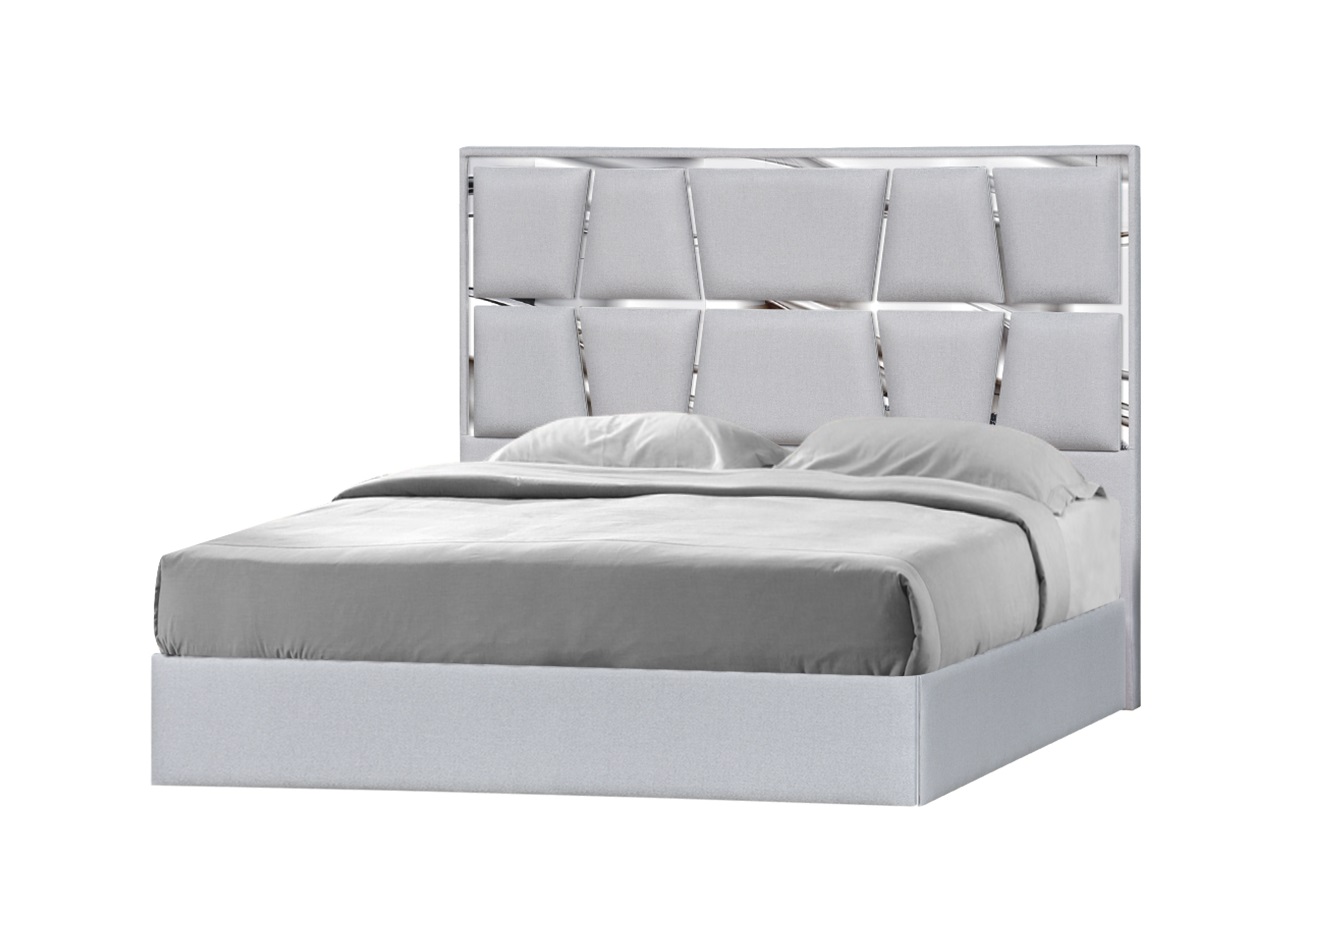 Elegant Quality Contemporary Platform Bedroom Sets - Click Image to Close